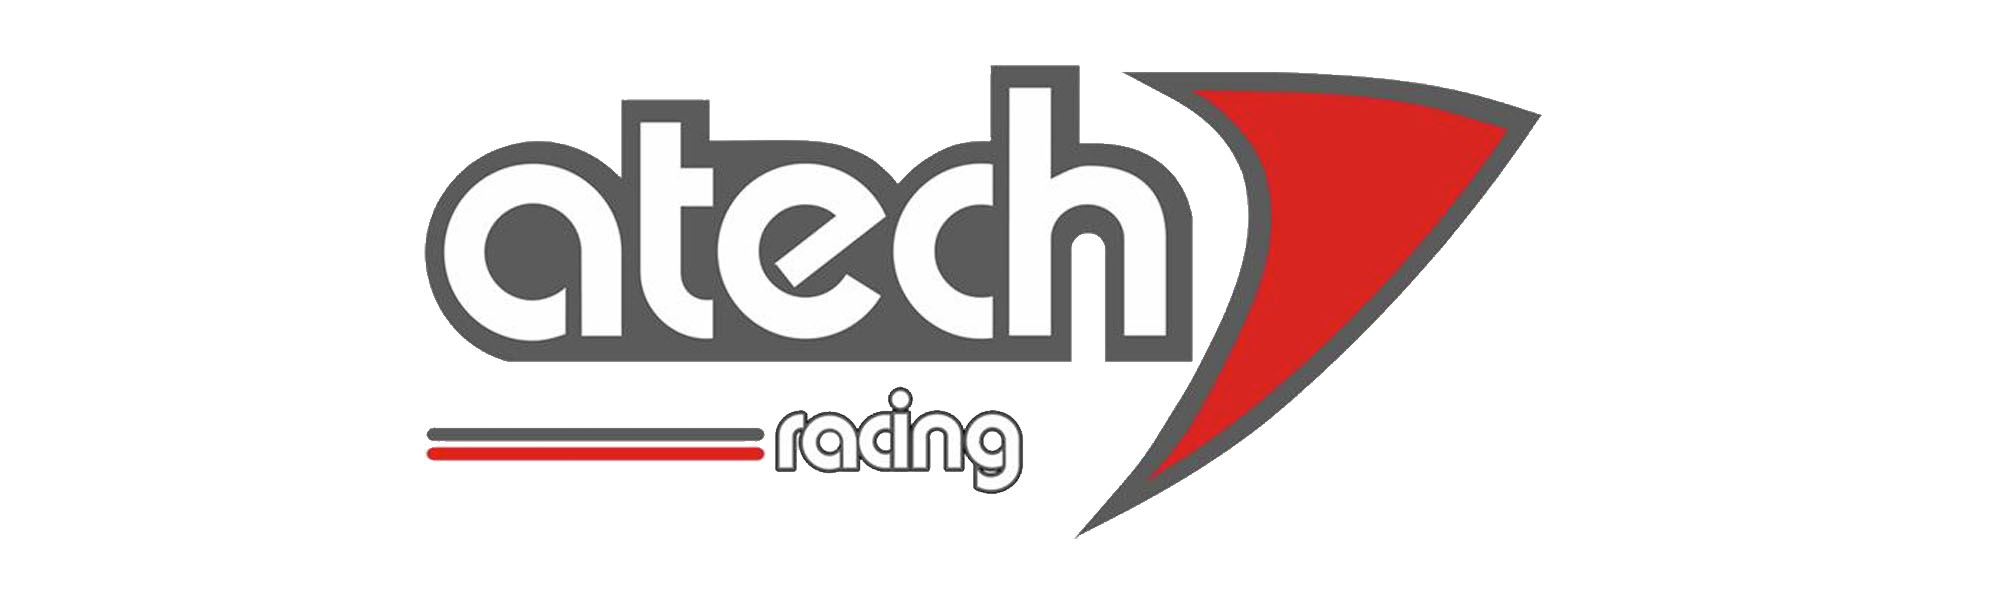 Atech Racing